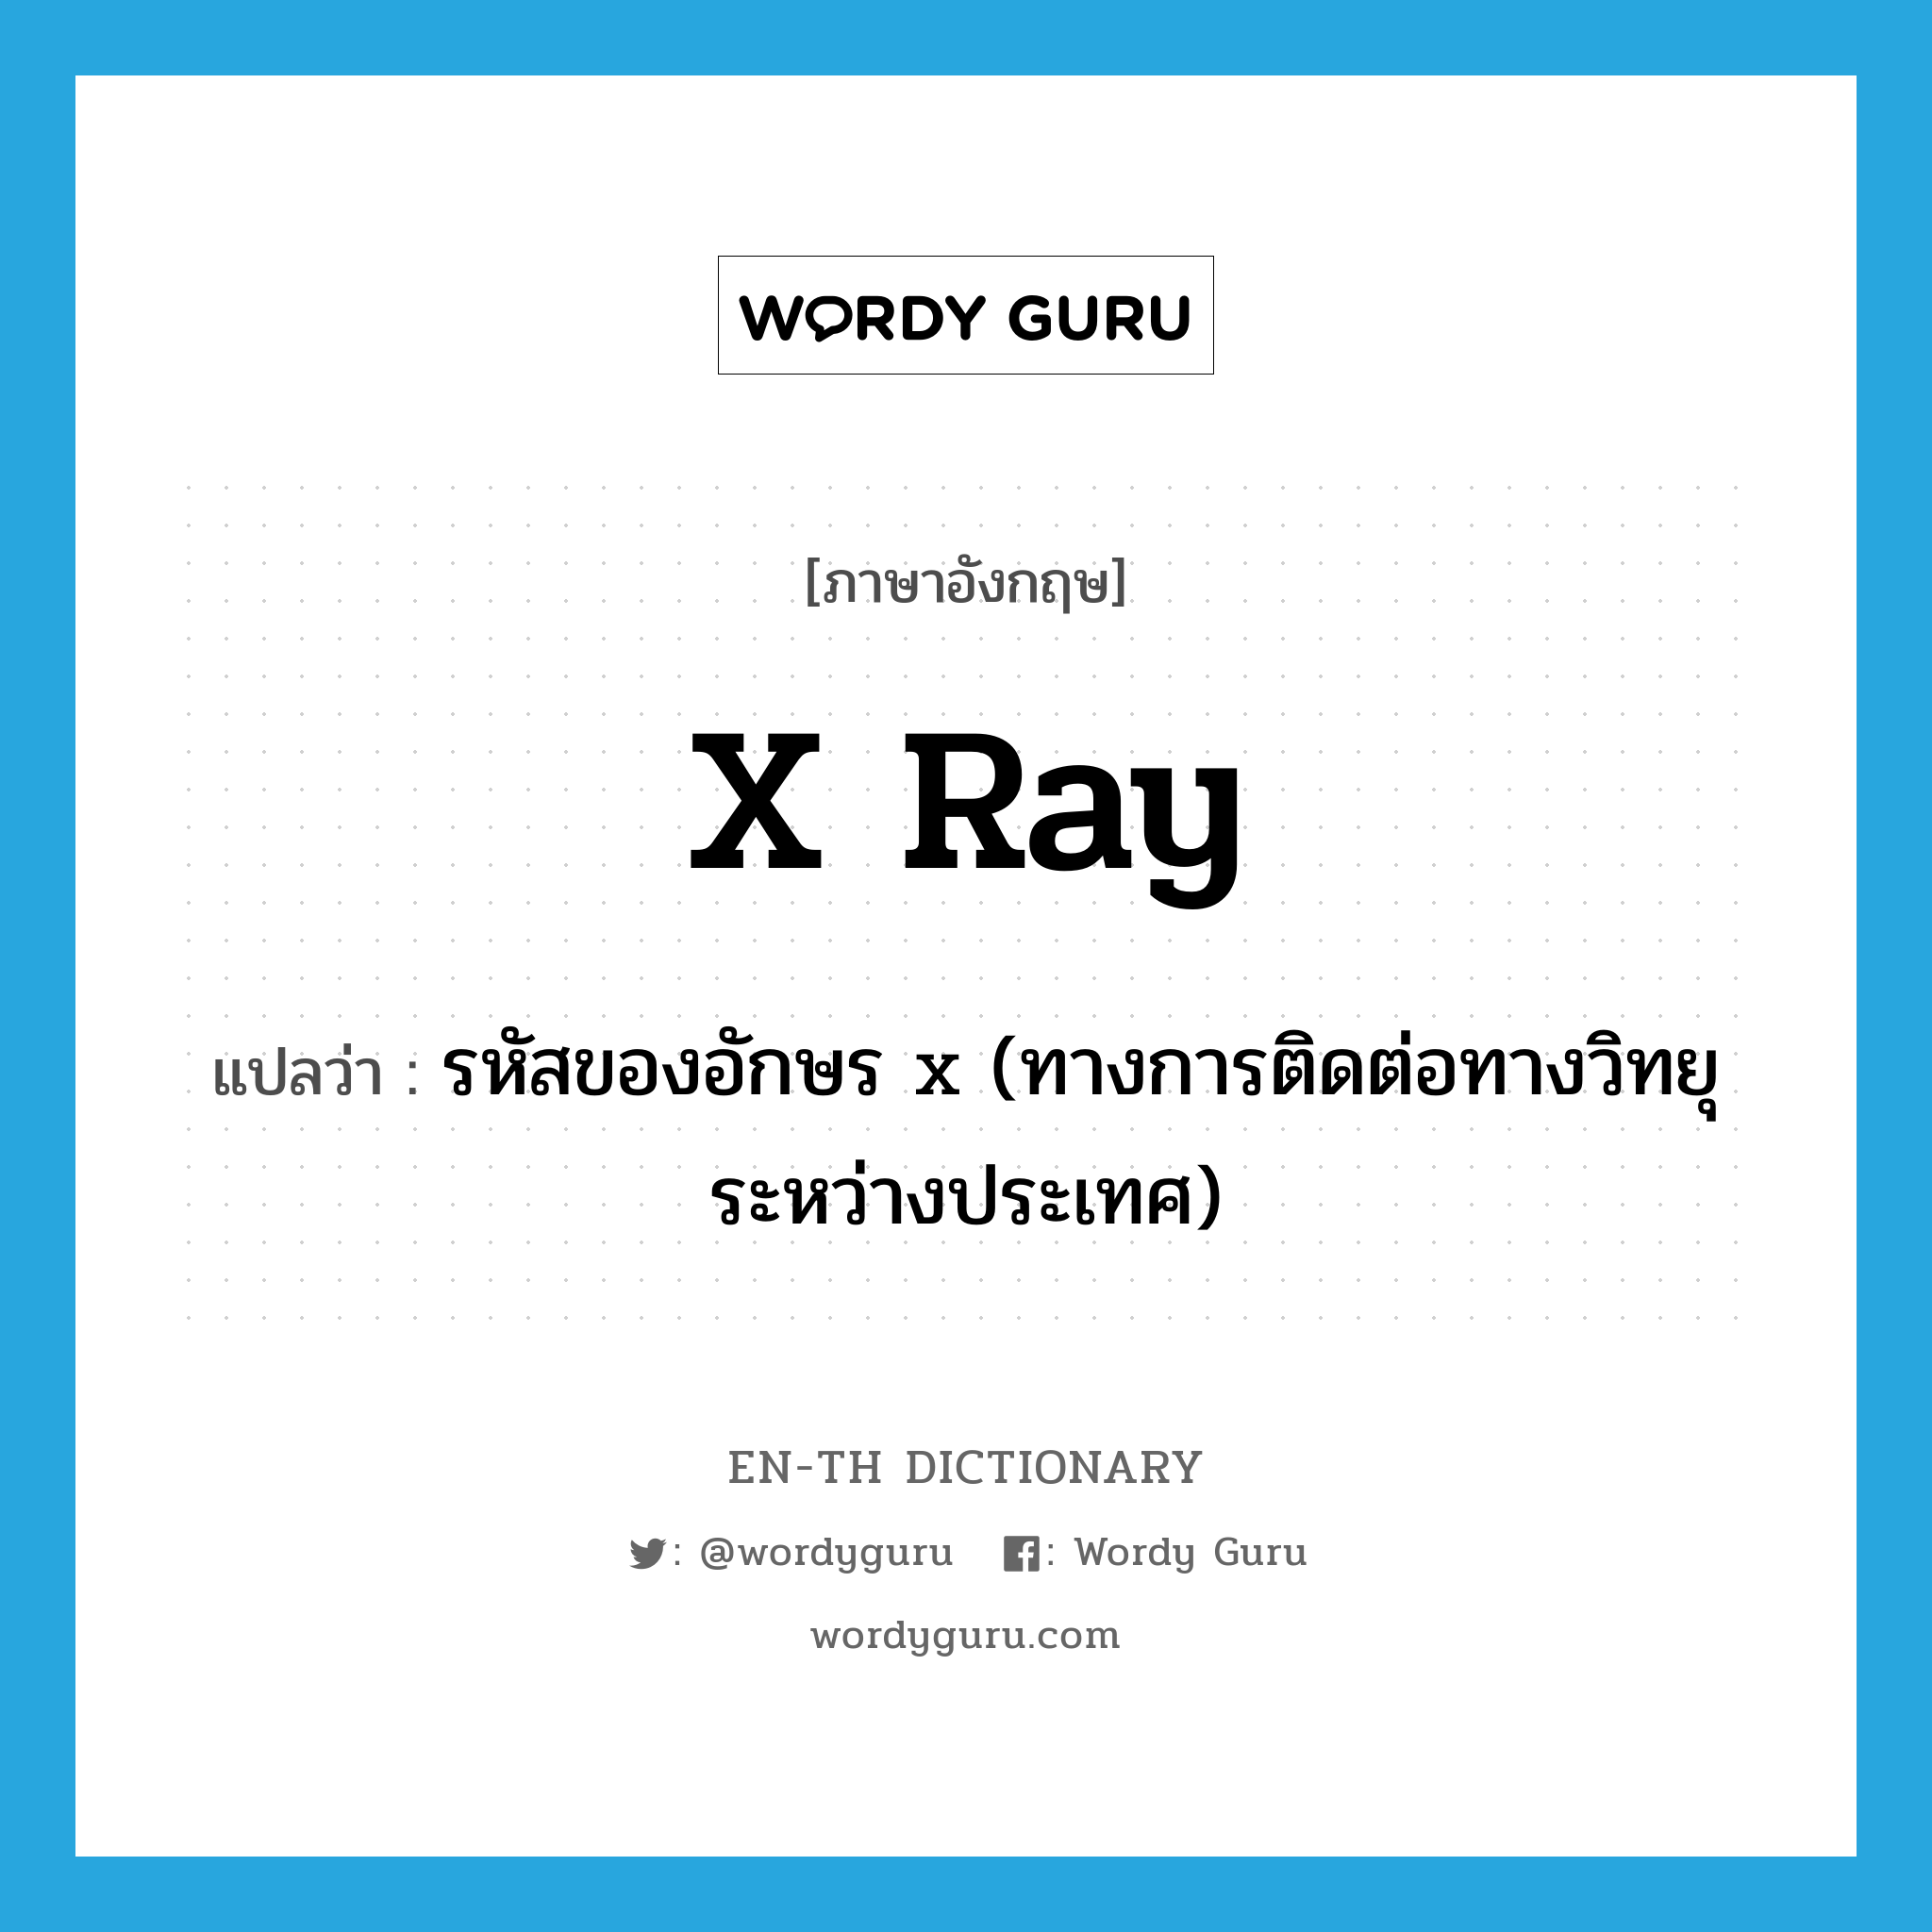 รหัสของอักษร x (ทางการติดต่อทางวิทยุระหว่างประเทศ) ภาษาอังกฤษ?, คำศัพท์ภาษาอังกฤษ รหัสของอักษร x (ทางการติดต่อทางวิทยุระหว่างประเทศ) แปลว่า x ray ประเภท N หมวด N